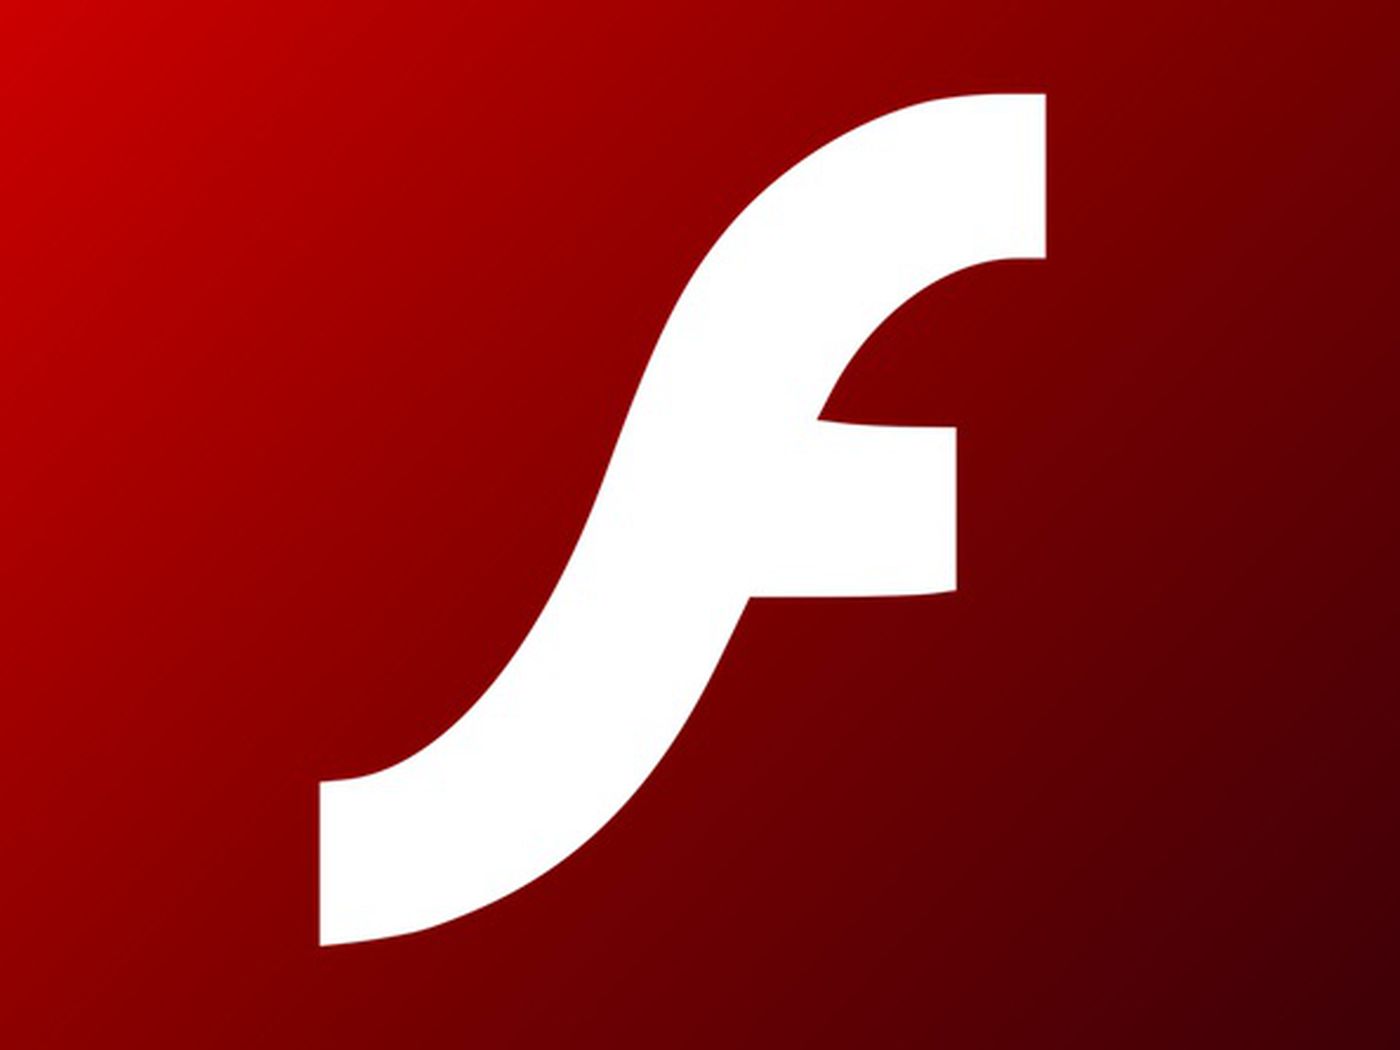 Adobe to Start Blocking Flash